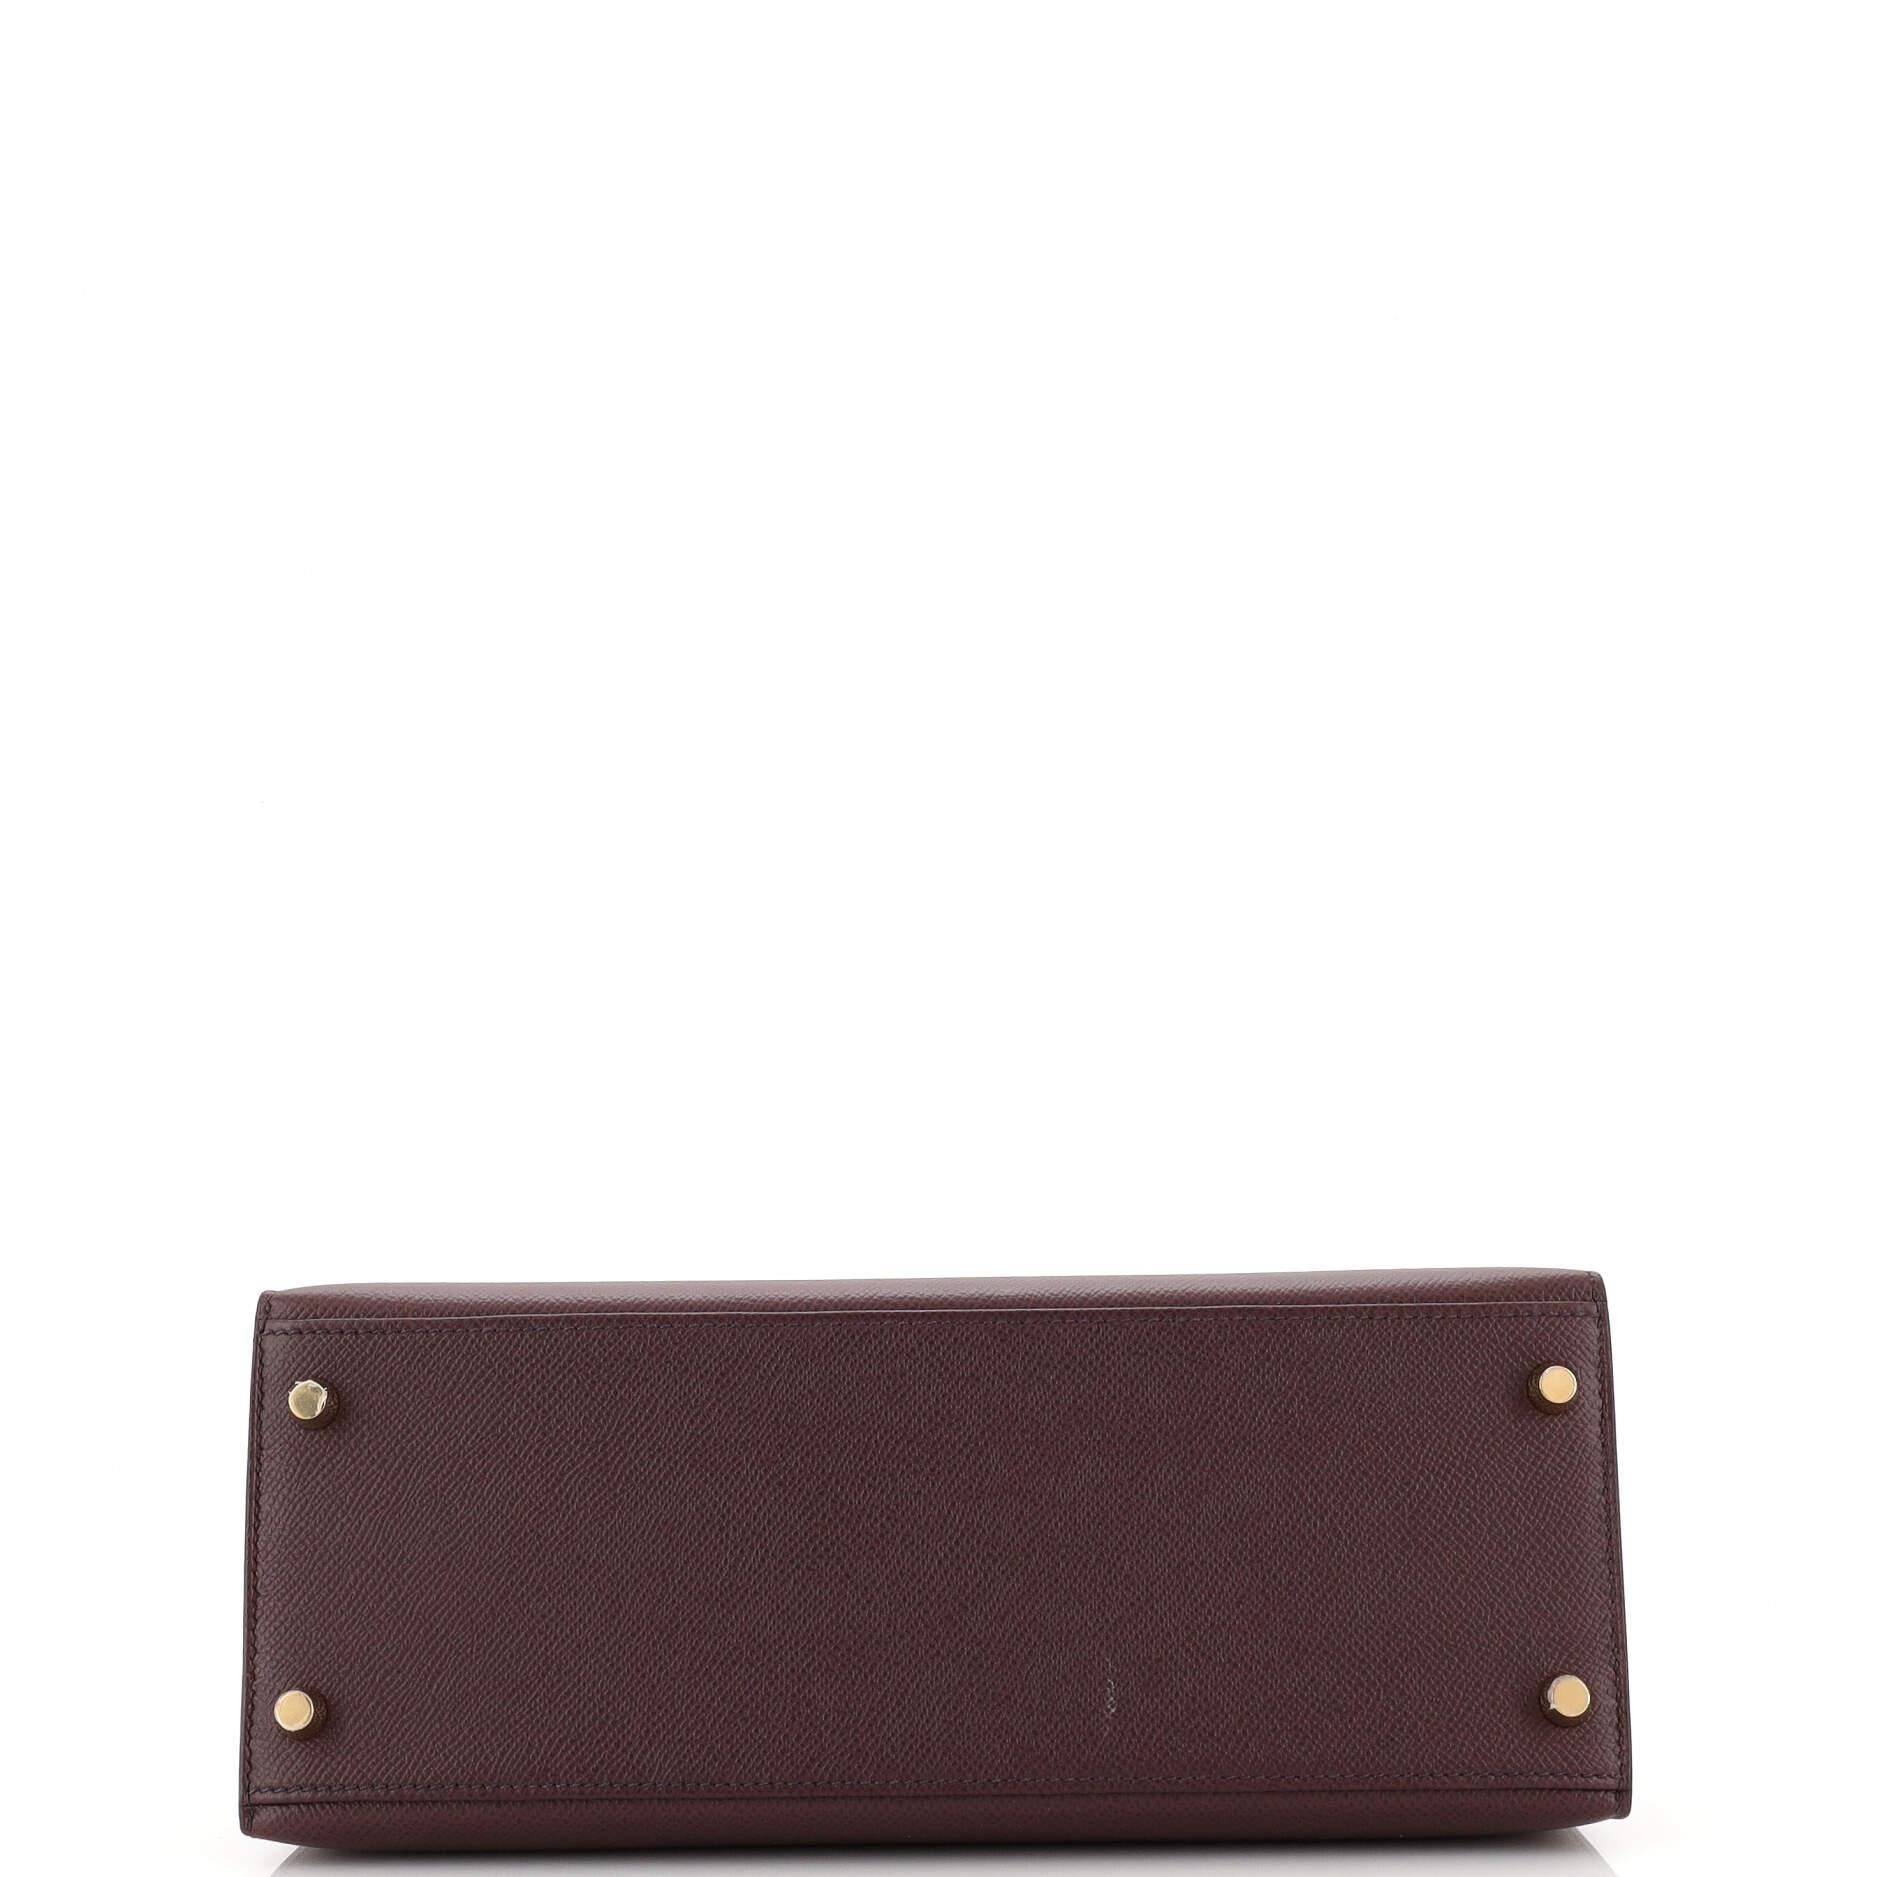 Women's Hermes Kelly Handbag Rouge Sellier Epsom with Gold Hardware 28